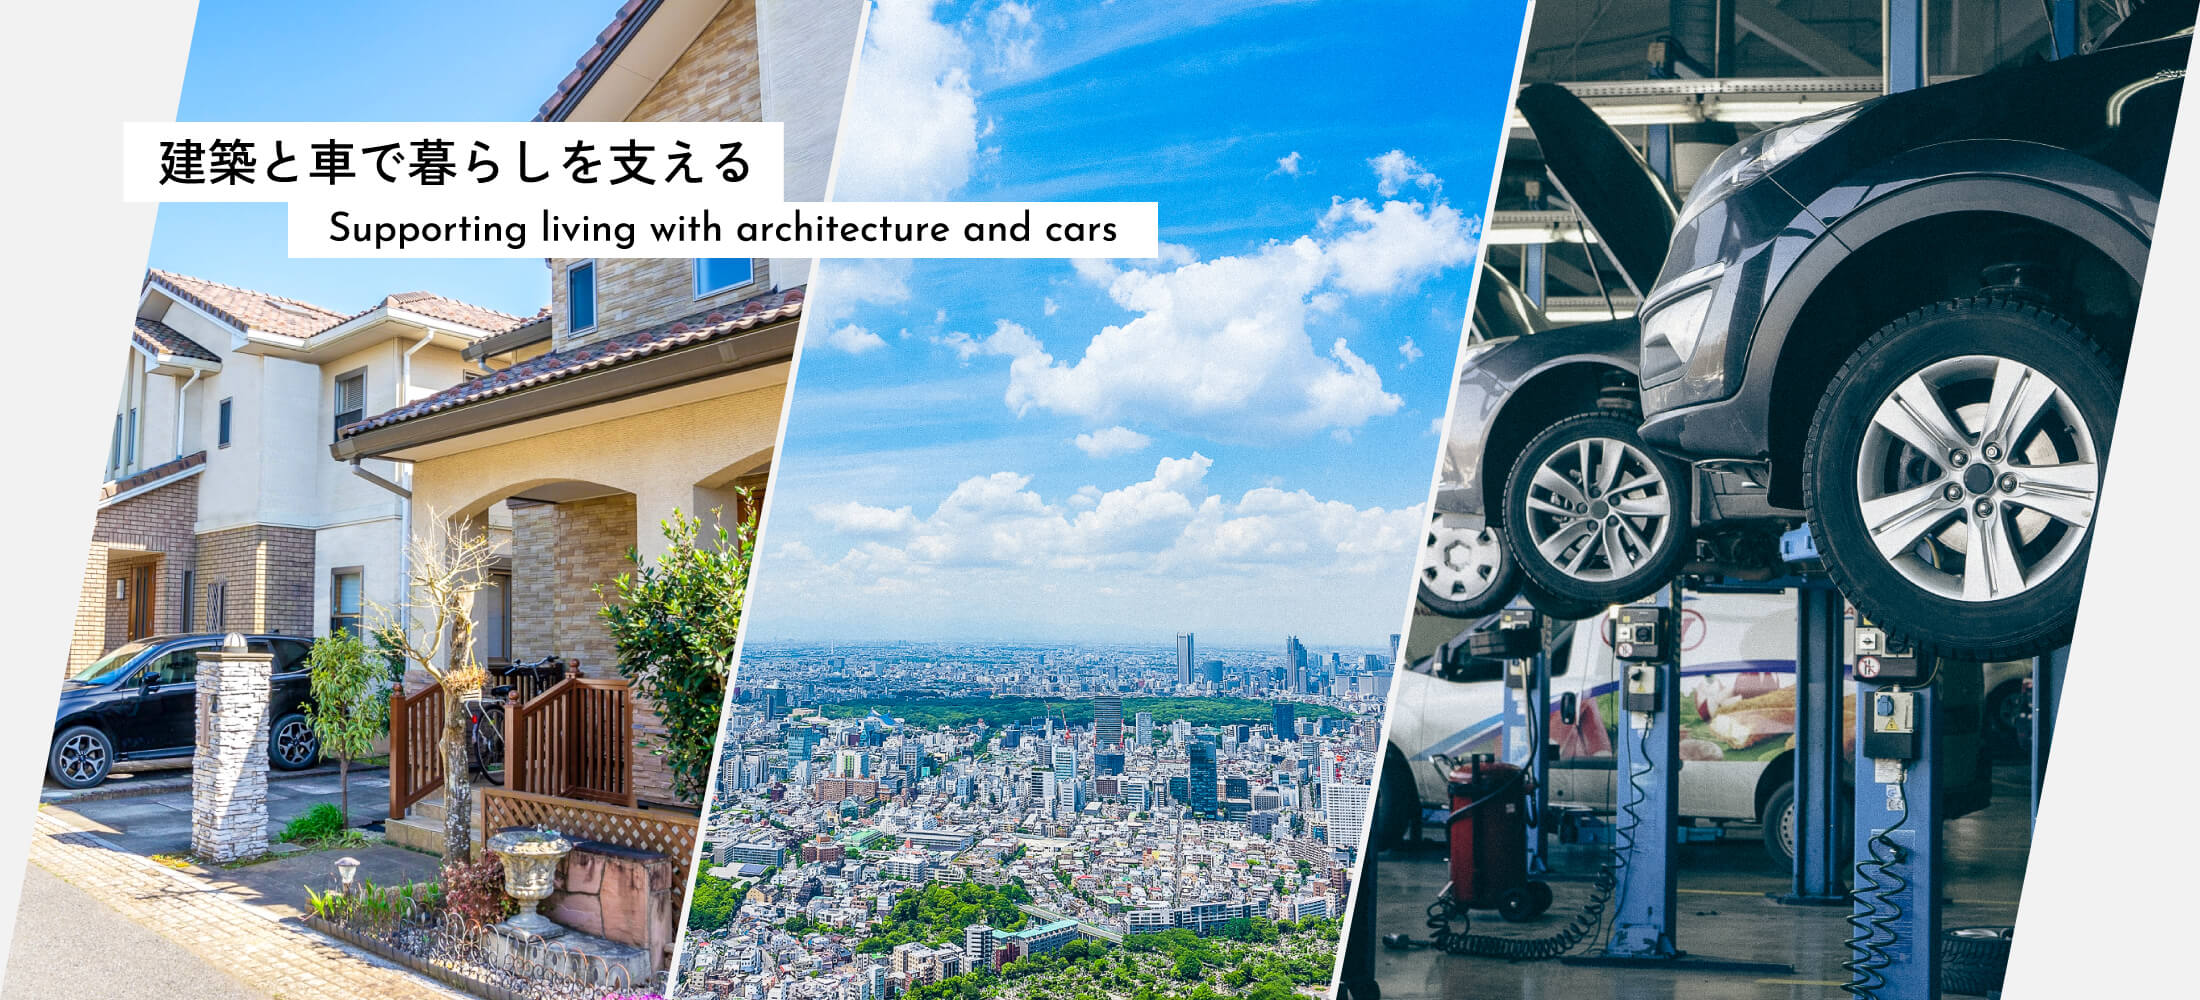 建築と車で暮らしを支える Supporting living with architecture and cars